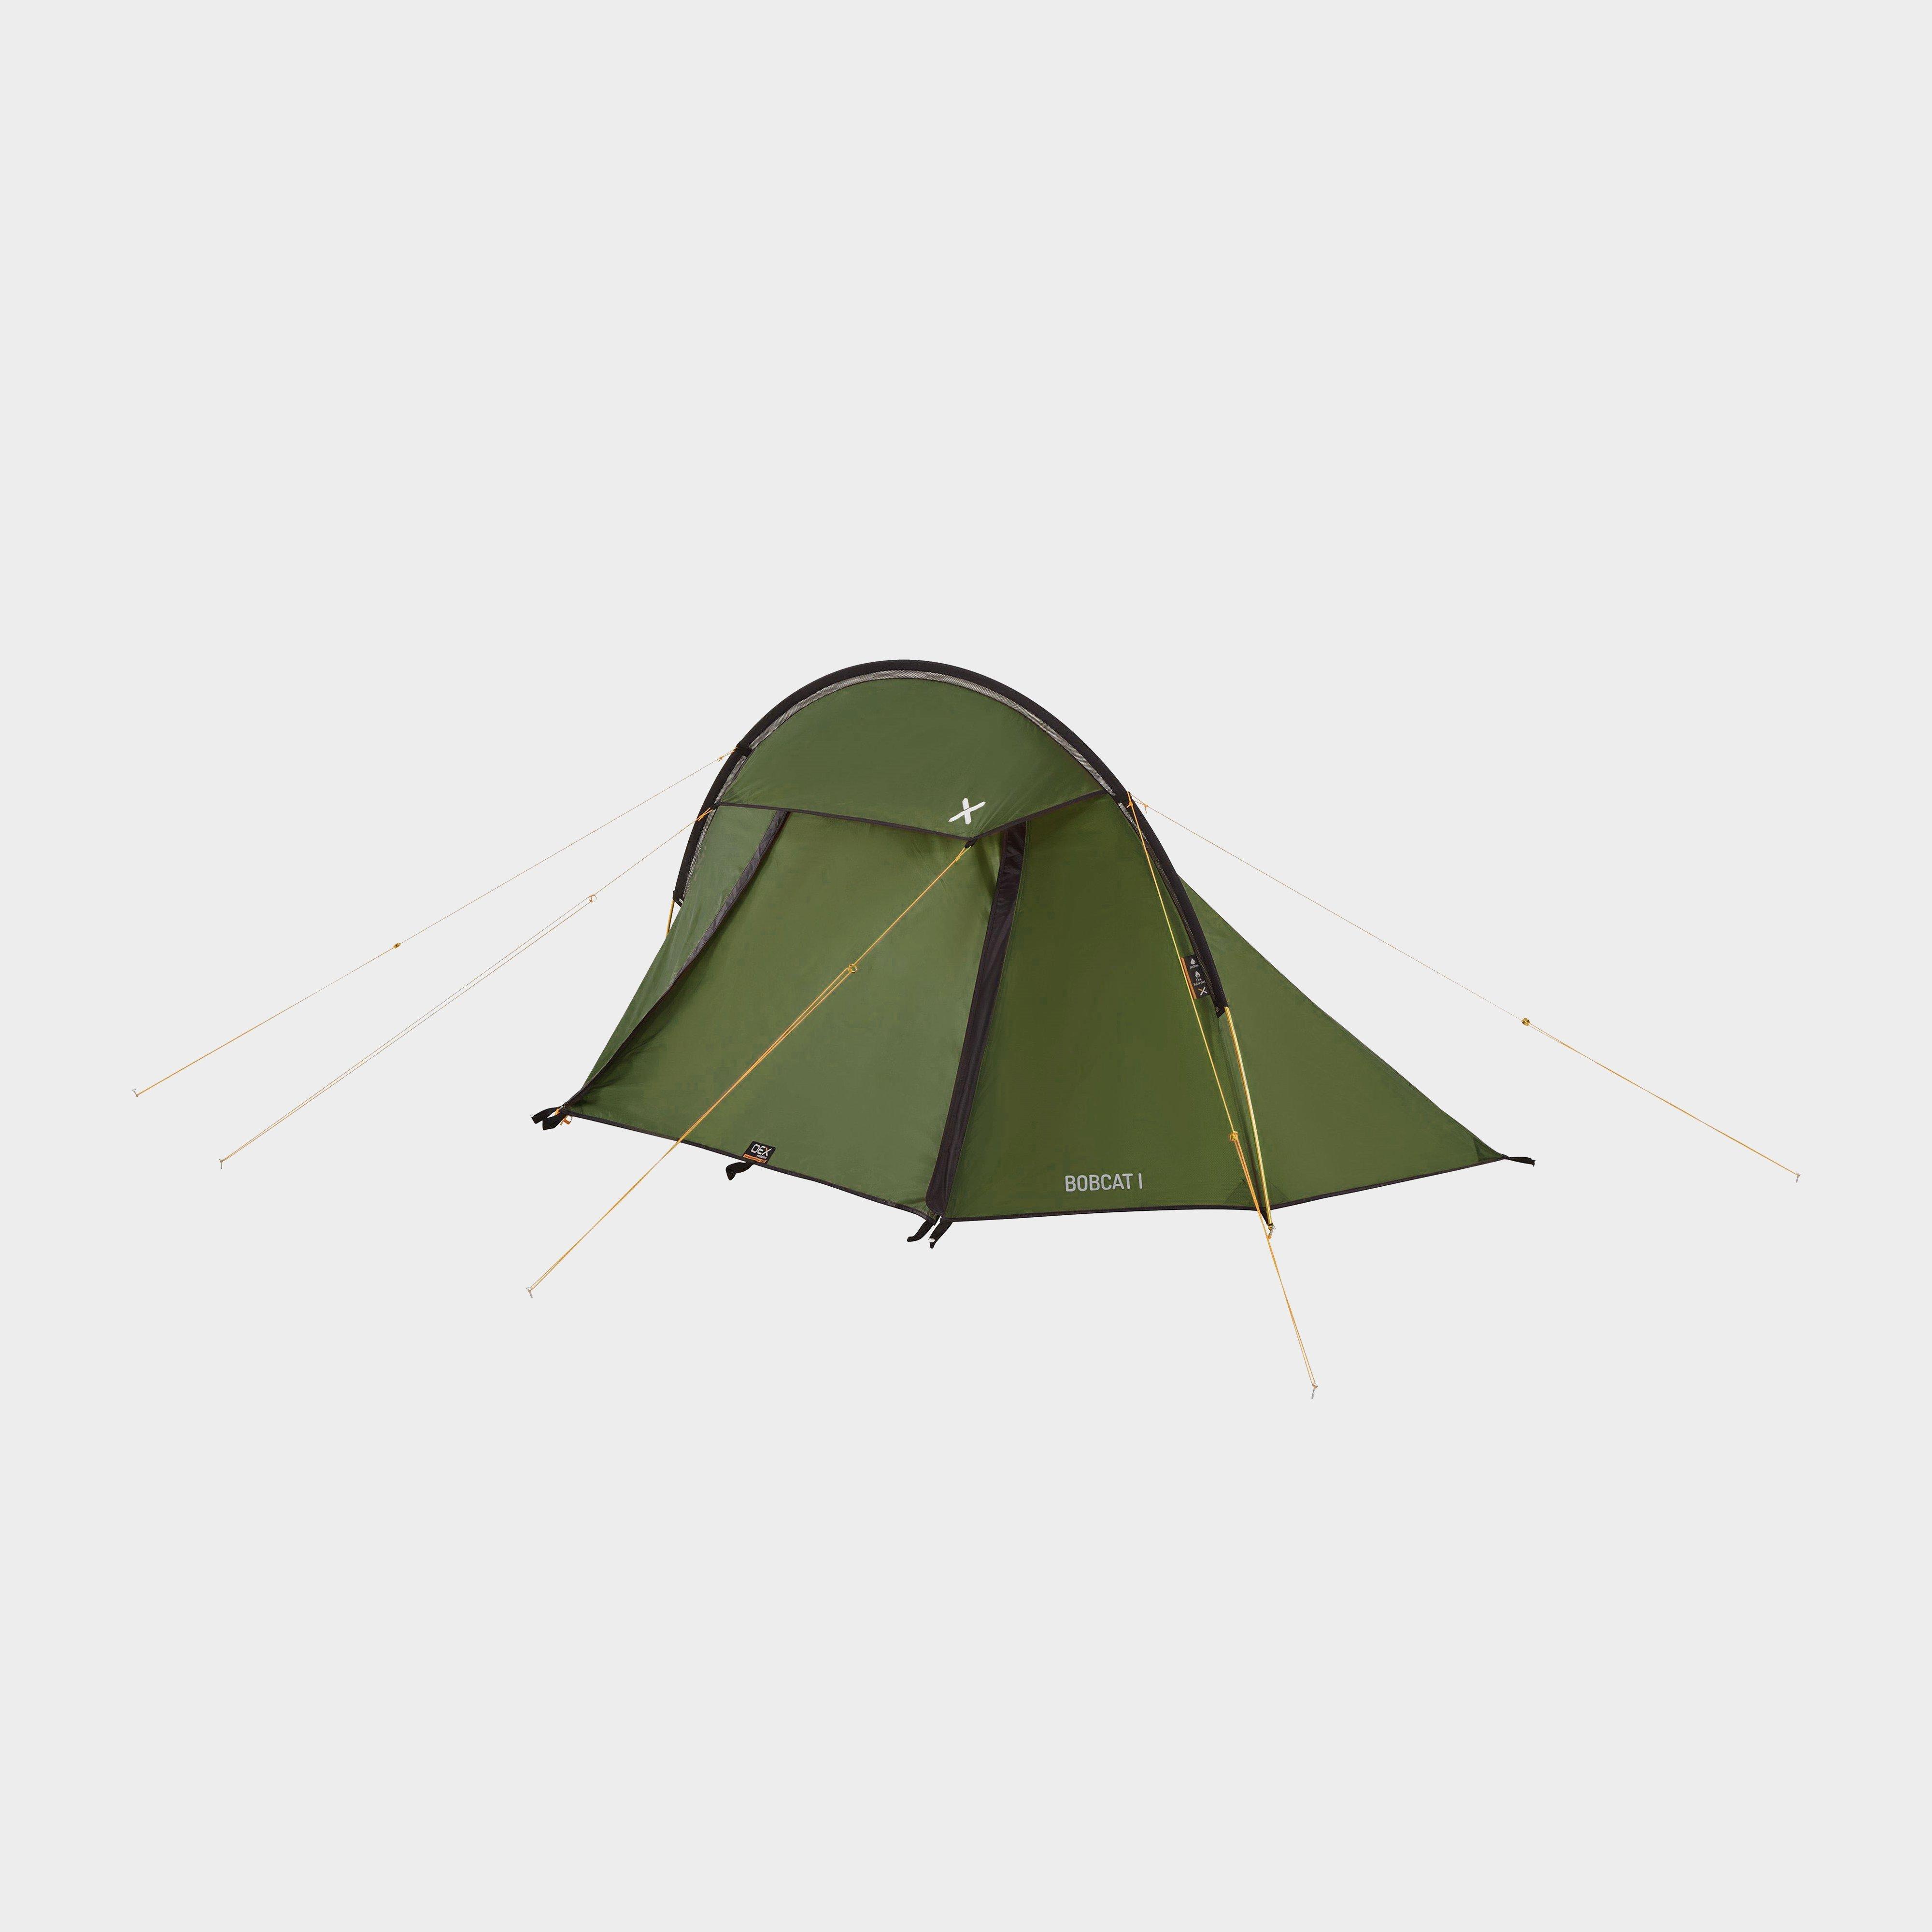 Oex Bobcat 1 Person Tent - Green/green  Green/green